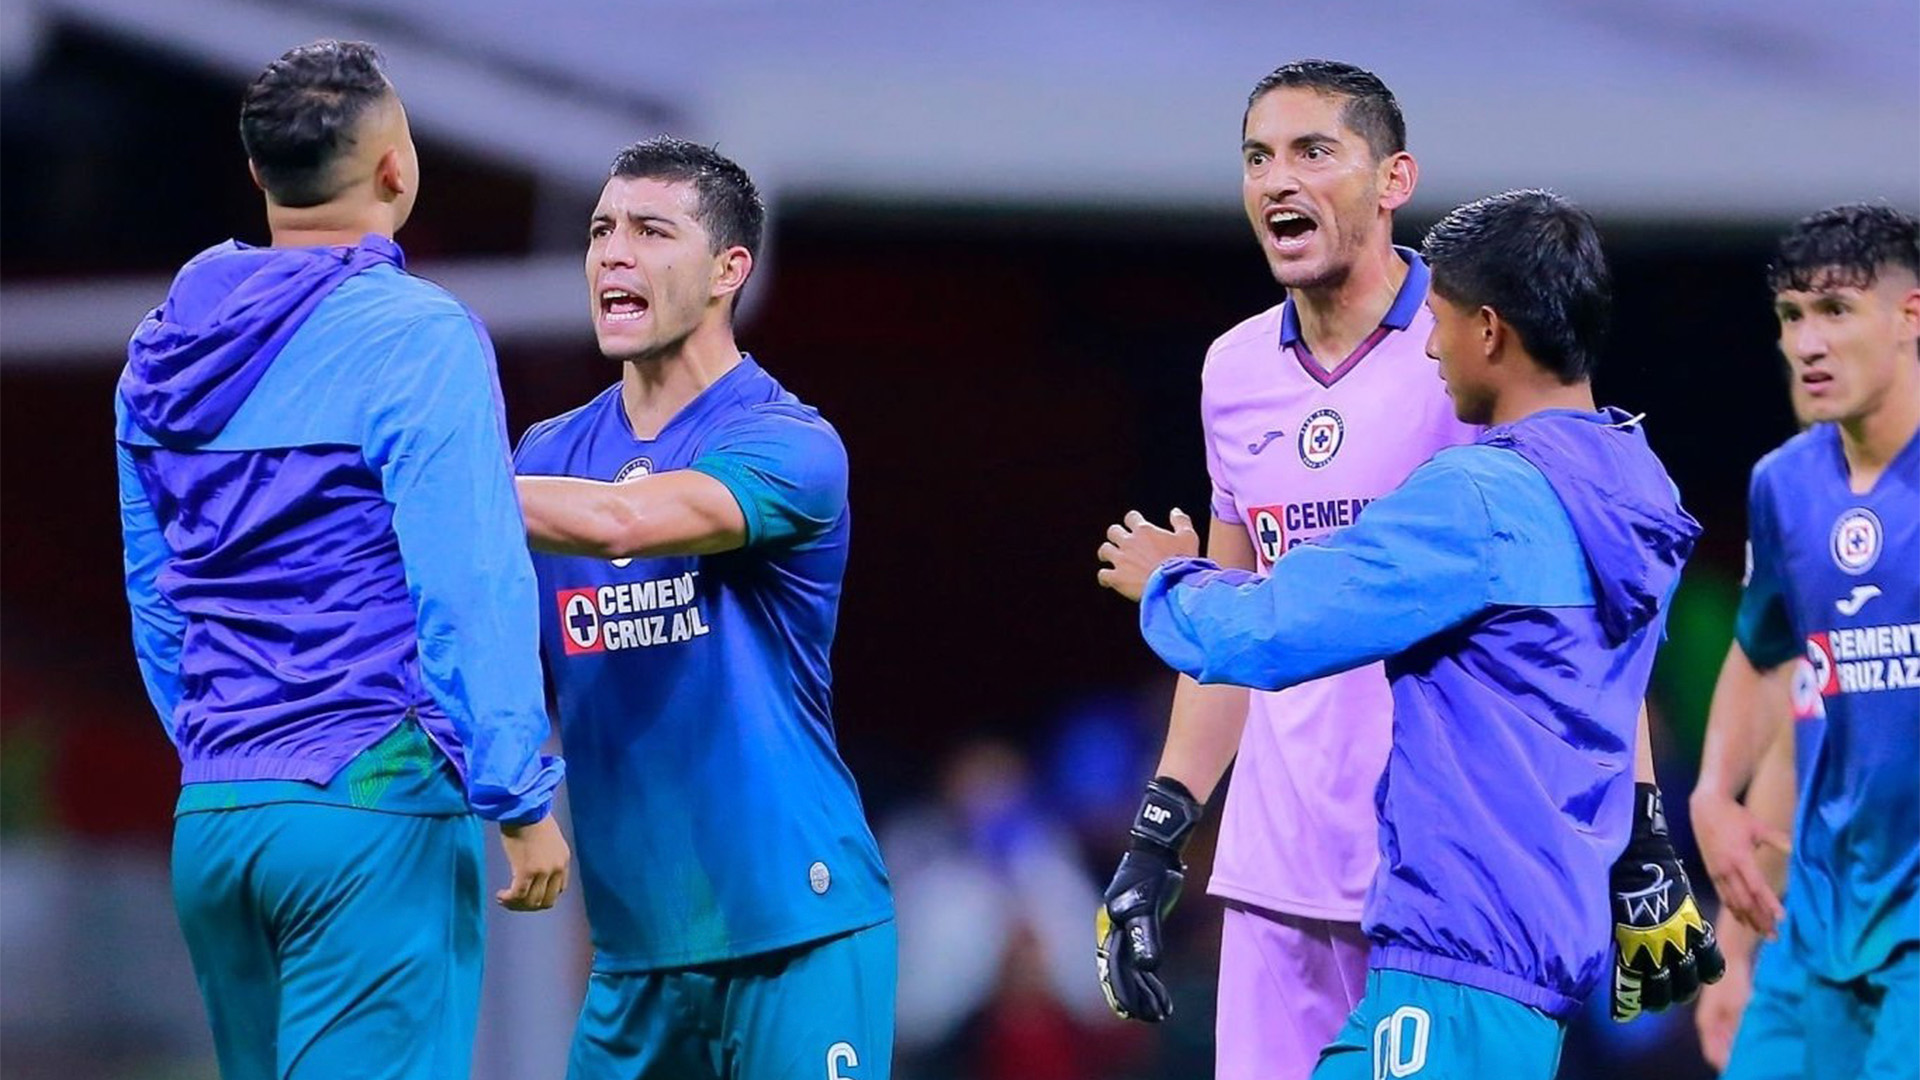 Duelo de orgullo: Cruz Azul recibe a Chivas por un un mejor lugar en la tabla de cara al repechaje